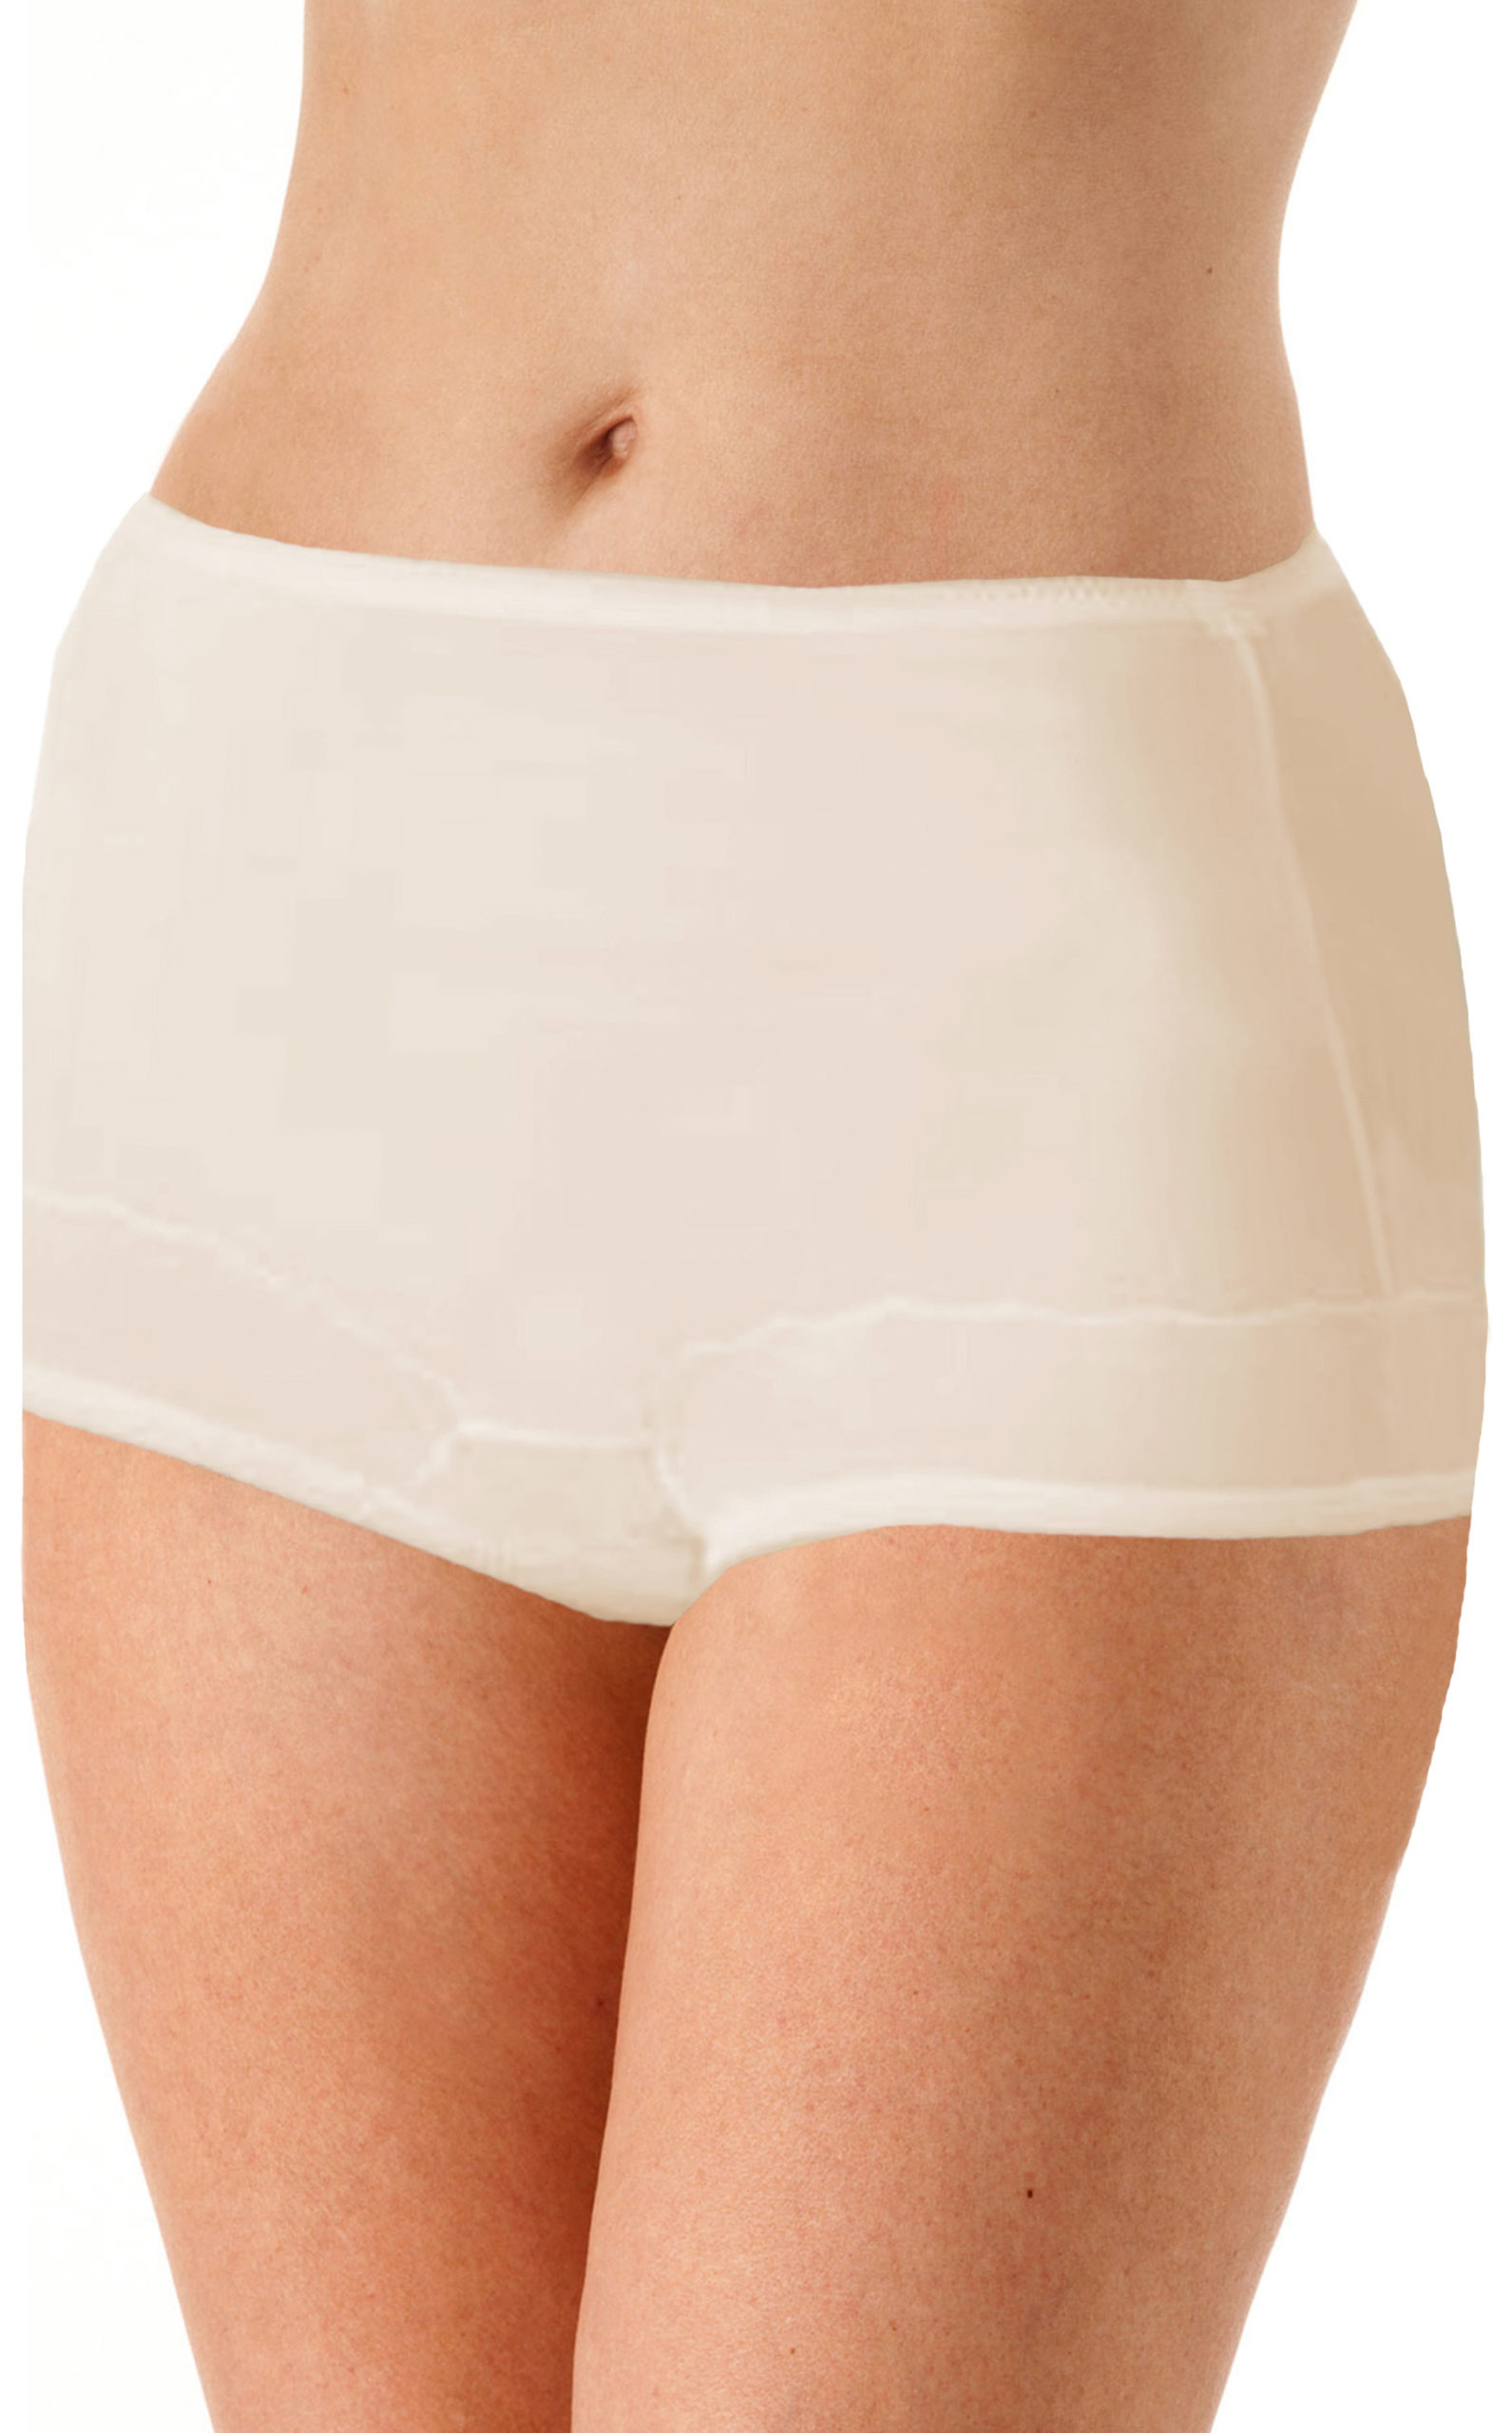 Buy DONSON Women Cotton Underwear High Waist Full Coverage Briefs